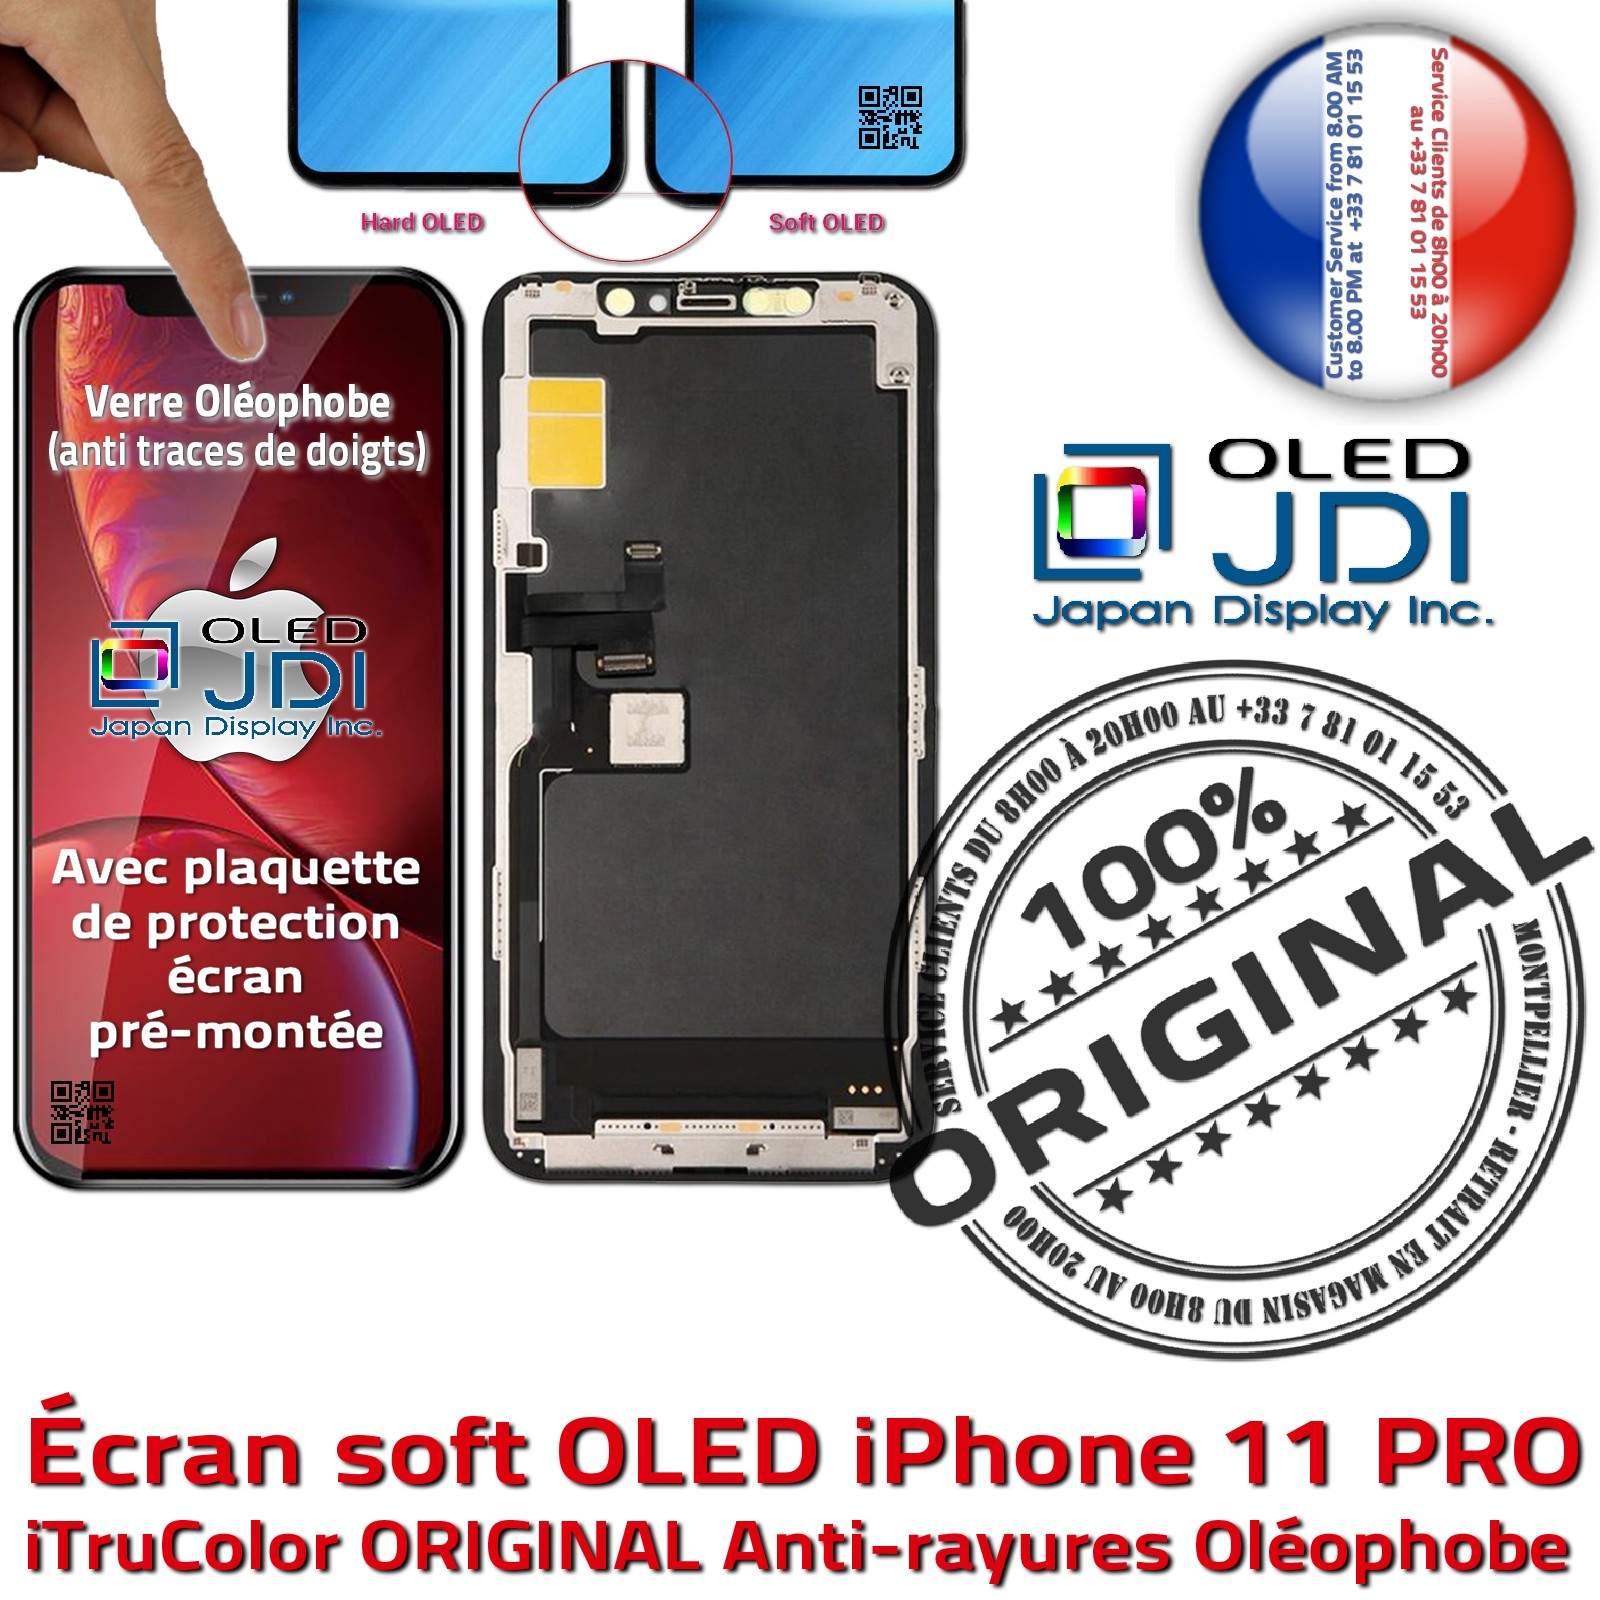 Écran iPhone 11 PRO Multi-Touch soft OLED Apple ORIGINAL 3D Touch